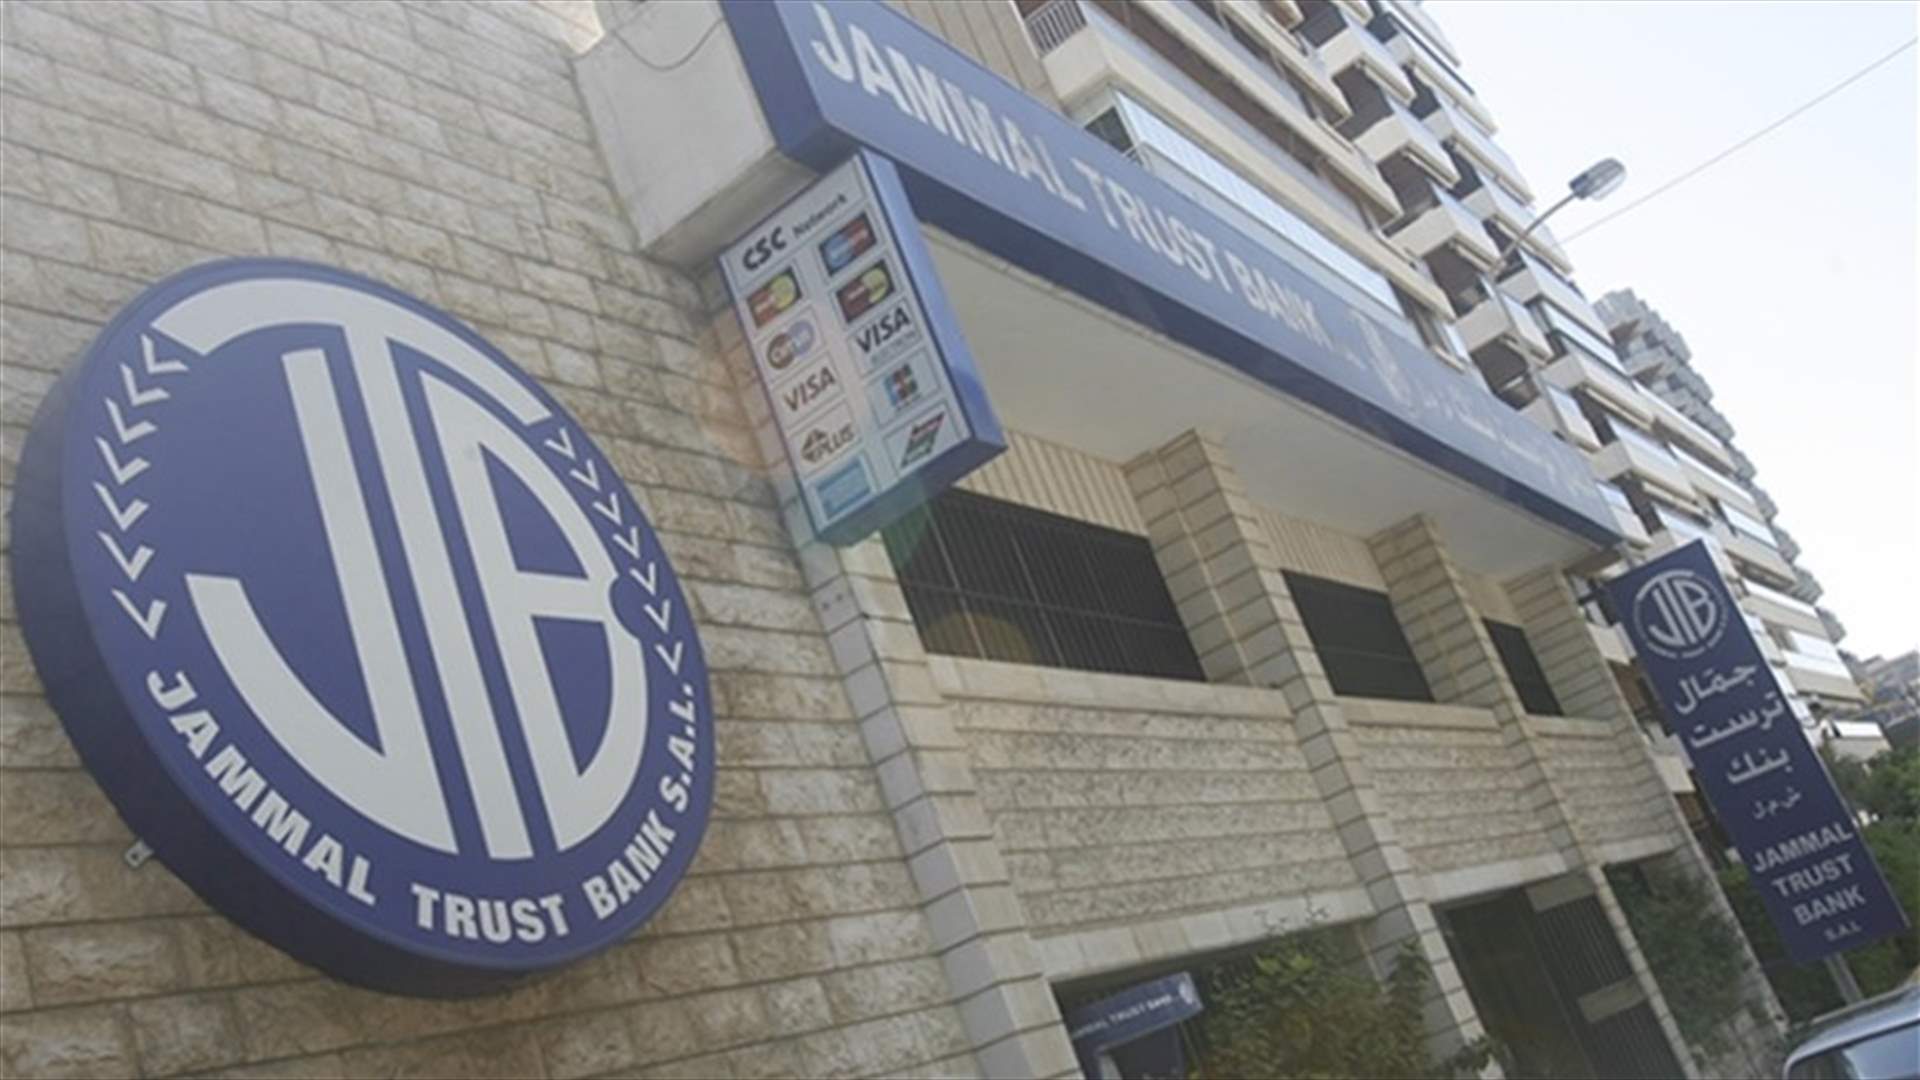 ما هو المبلغ الذي سيدفعه مصرف لبنان بدل عملية تصفية جمّال تراست بنك؟ (الأخبار)